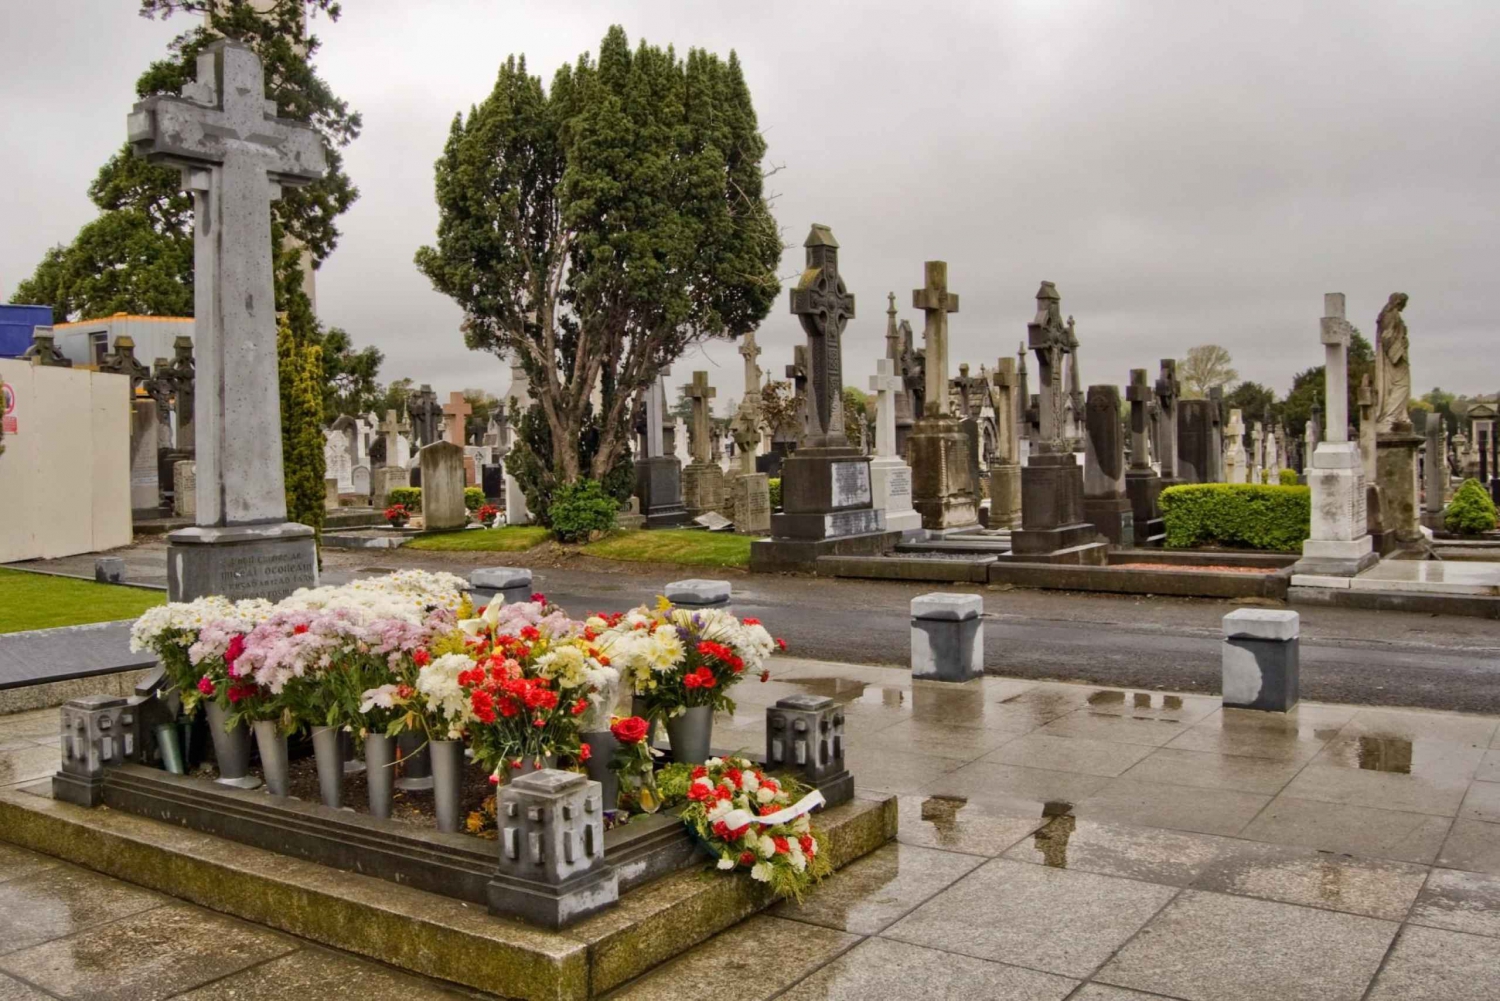 Visita guiada con audio al Cementerio Nacional de Dublín Glasnevin con traslados